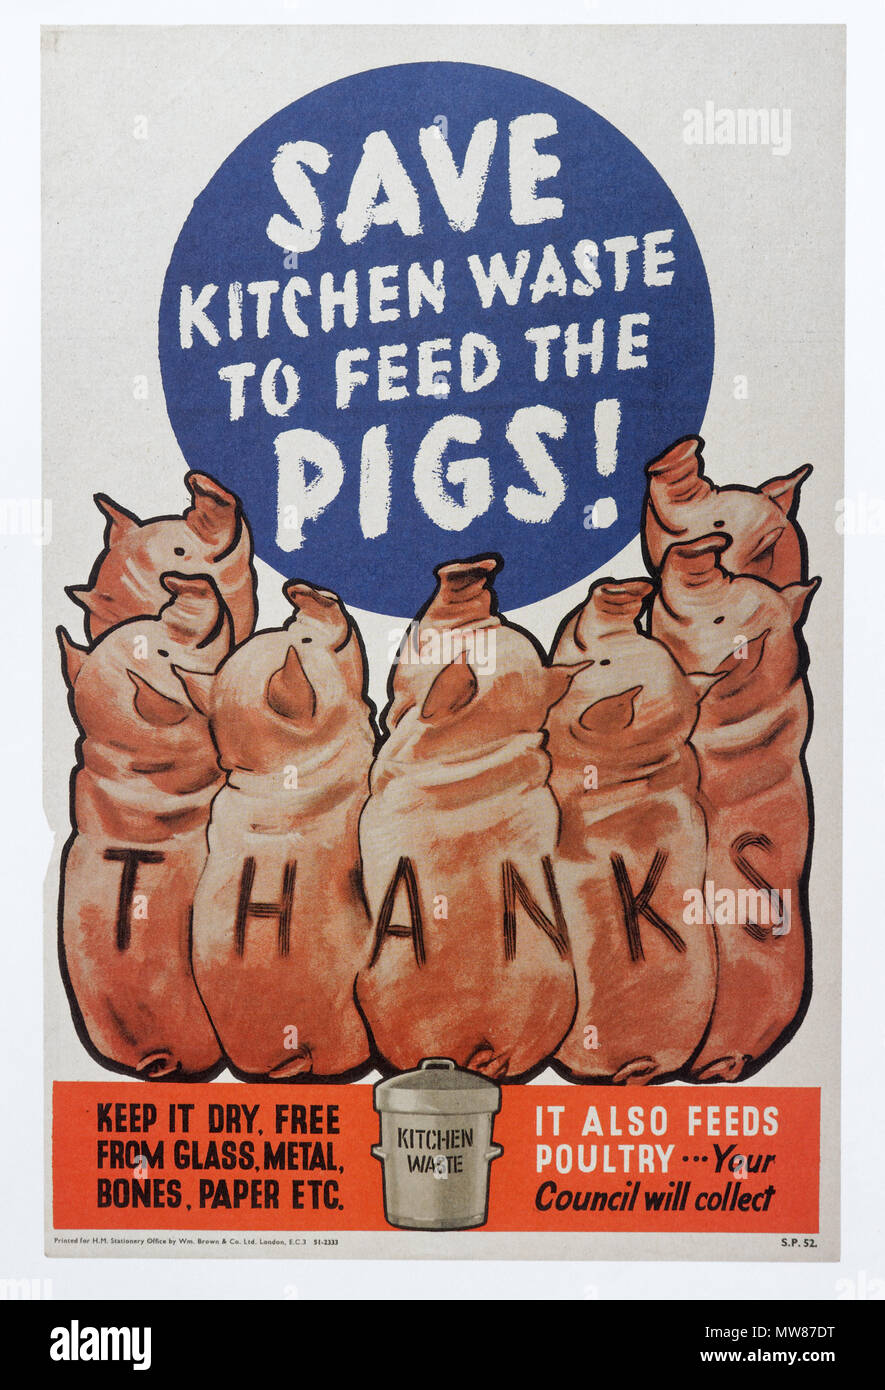 Una seconda guerra mondiale poster per incoraggiare le persone a salvare i rifiuti il cibo per nutrire suini - Salva i rifiuti di cucina per alimentare i suini Foto Stock